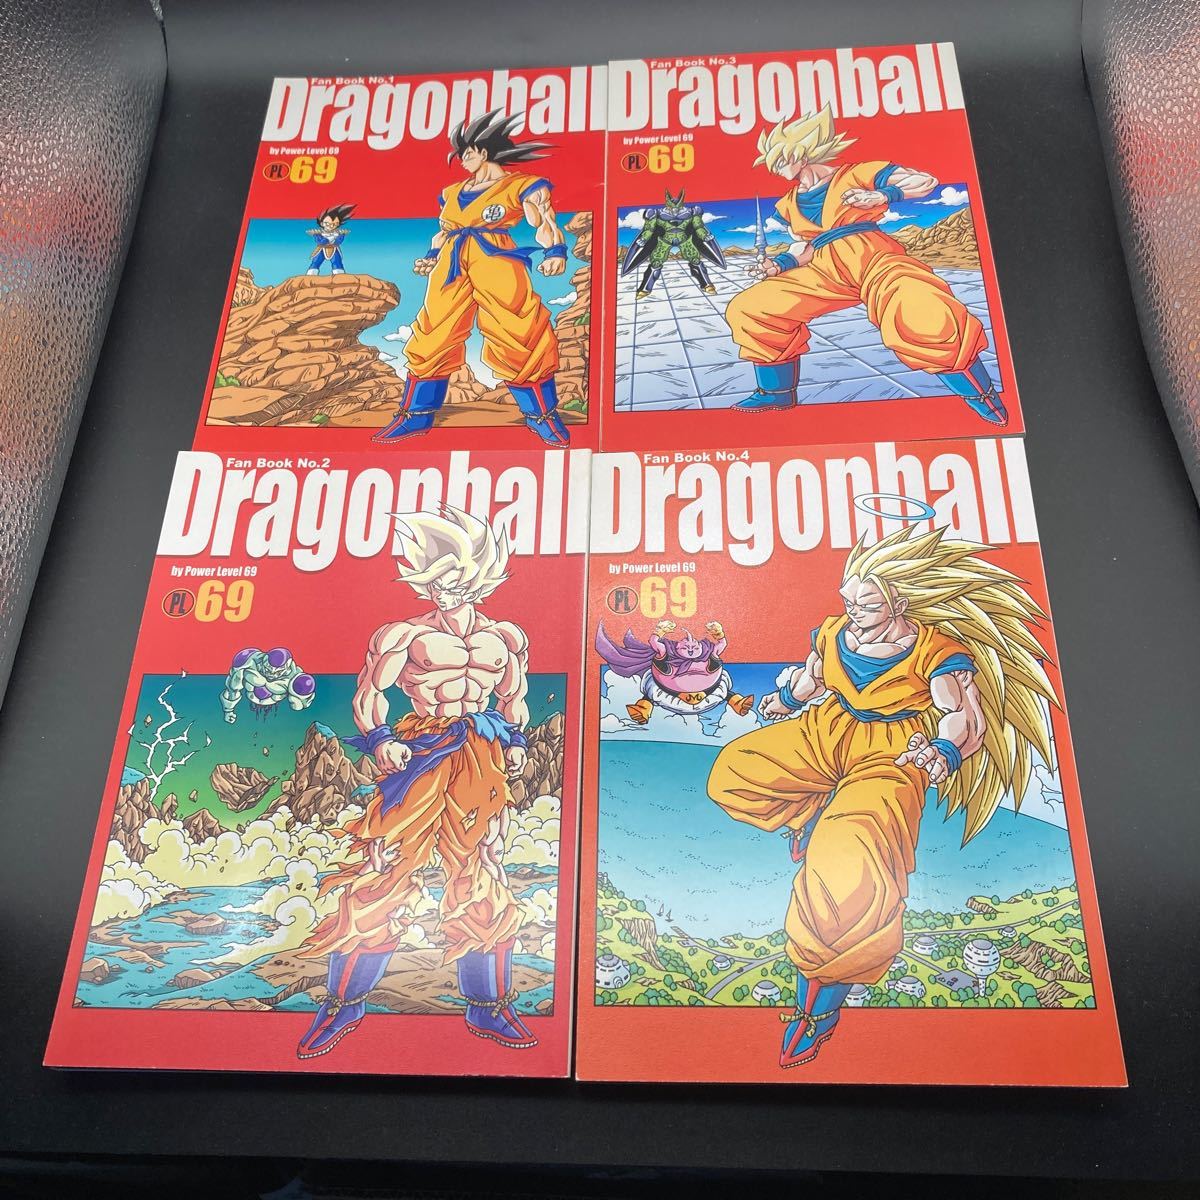  Dragon Ball журнал узкого круга литераторов PL 69 No.1 No.2 No.3 No.4 4 шт. комплект 